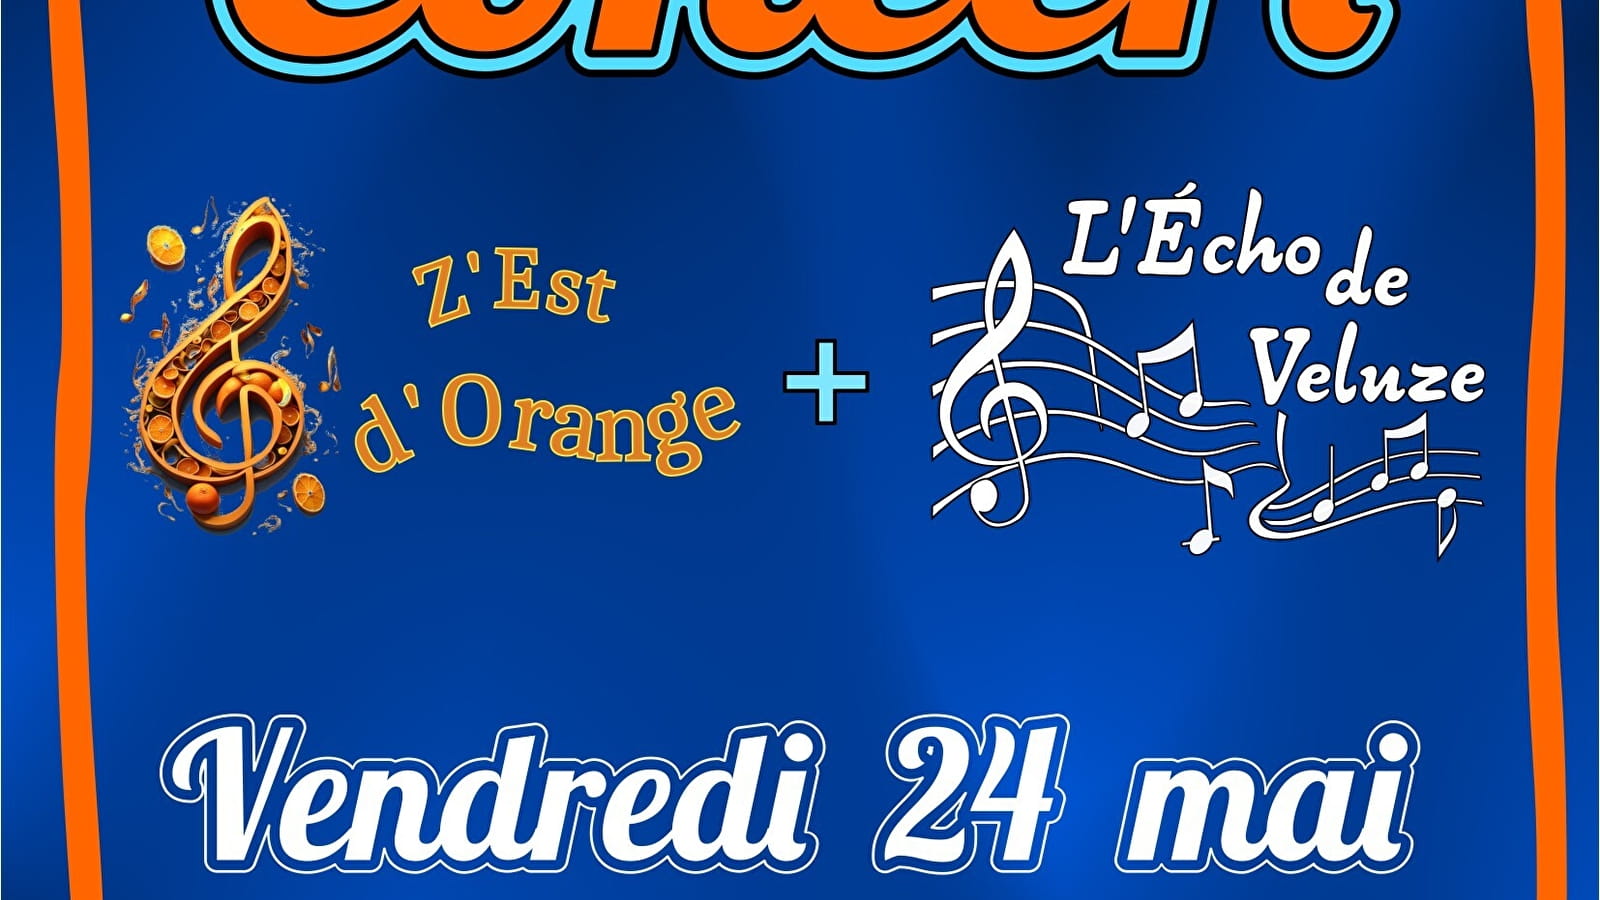 Concert des chorales Echo de Veluze + Z'est d'Orange